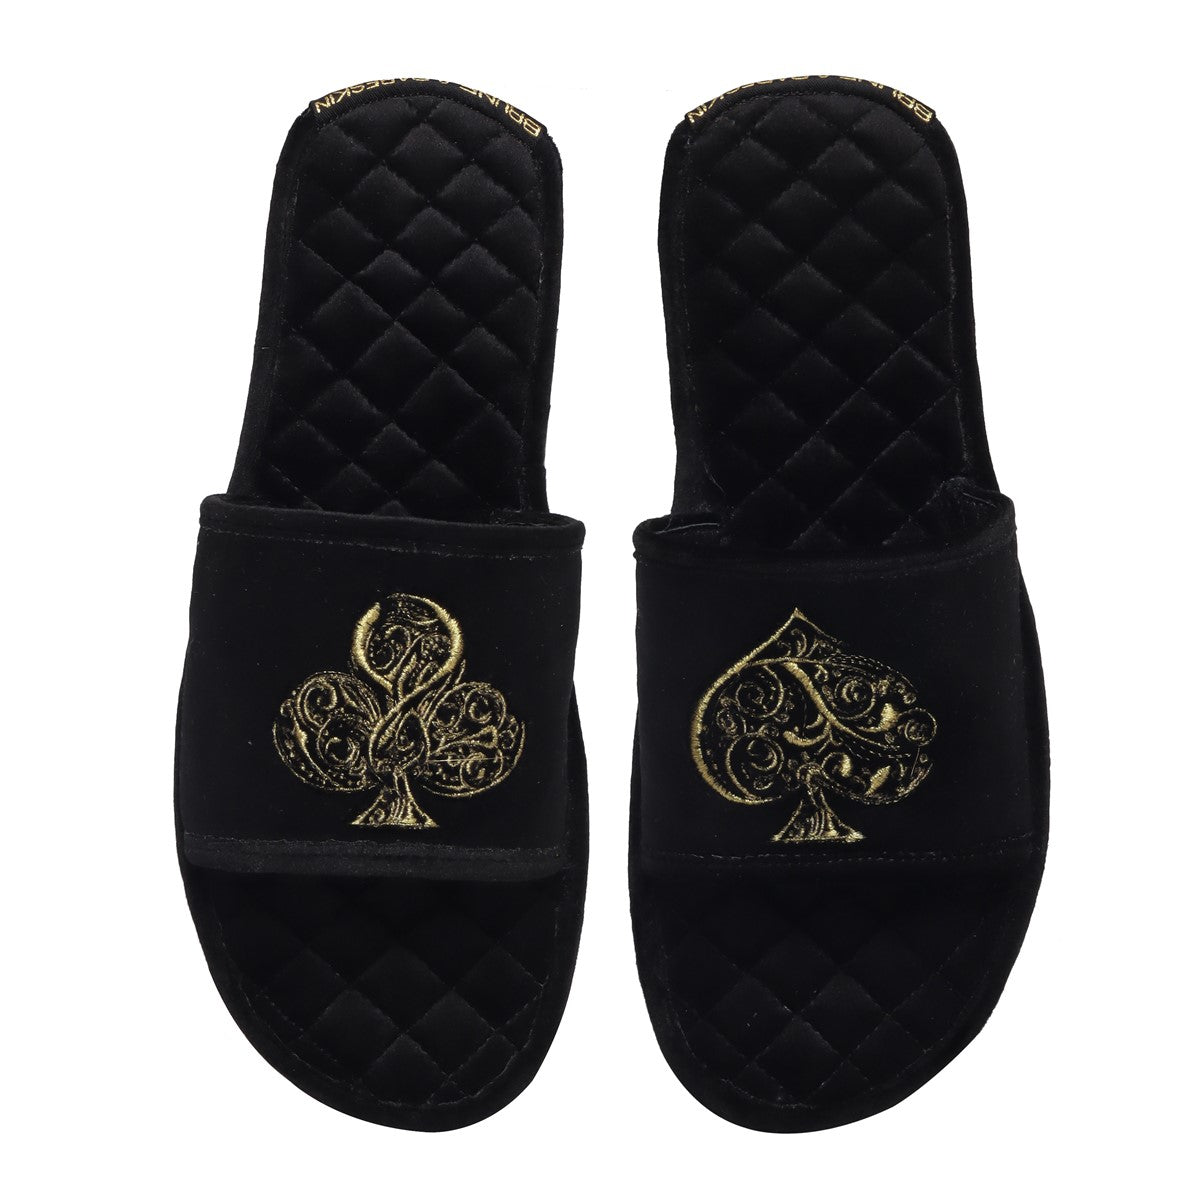 Golden Poker Detailed Embroidery Super Soft Base Black Velvet Slide-in Slippers by Brune & Bareskin